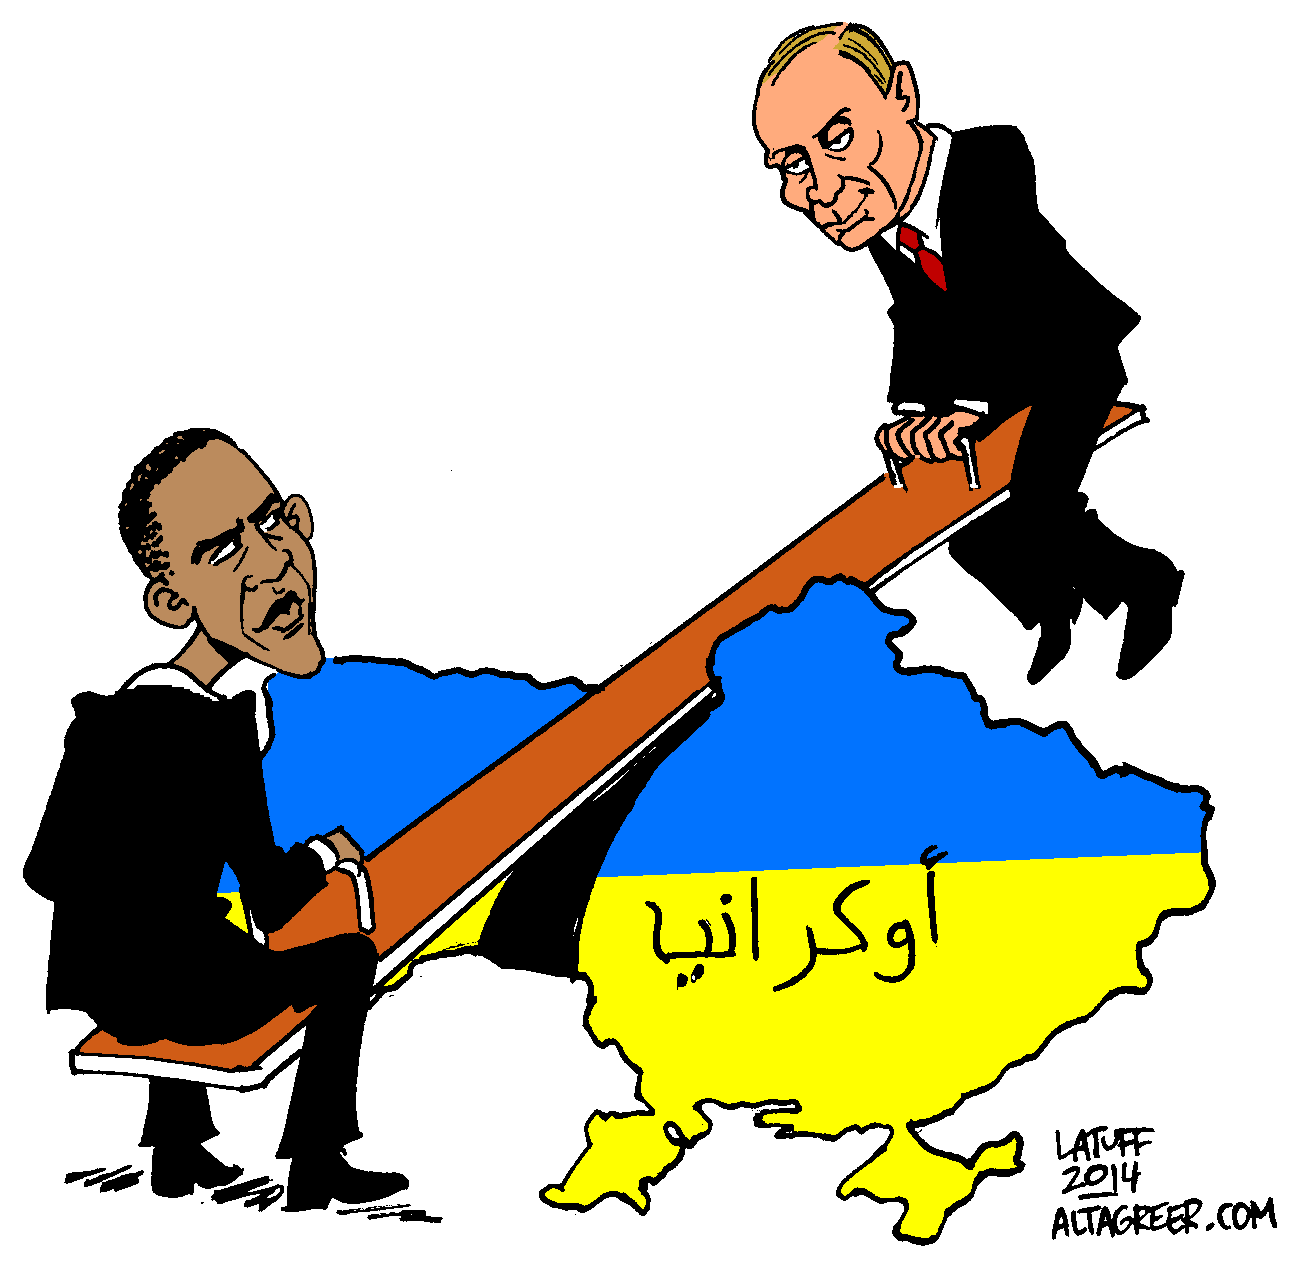 obama putin ukraine